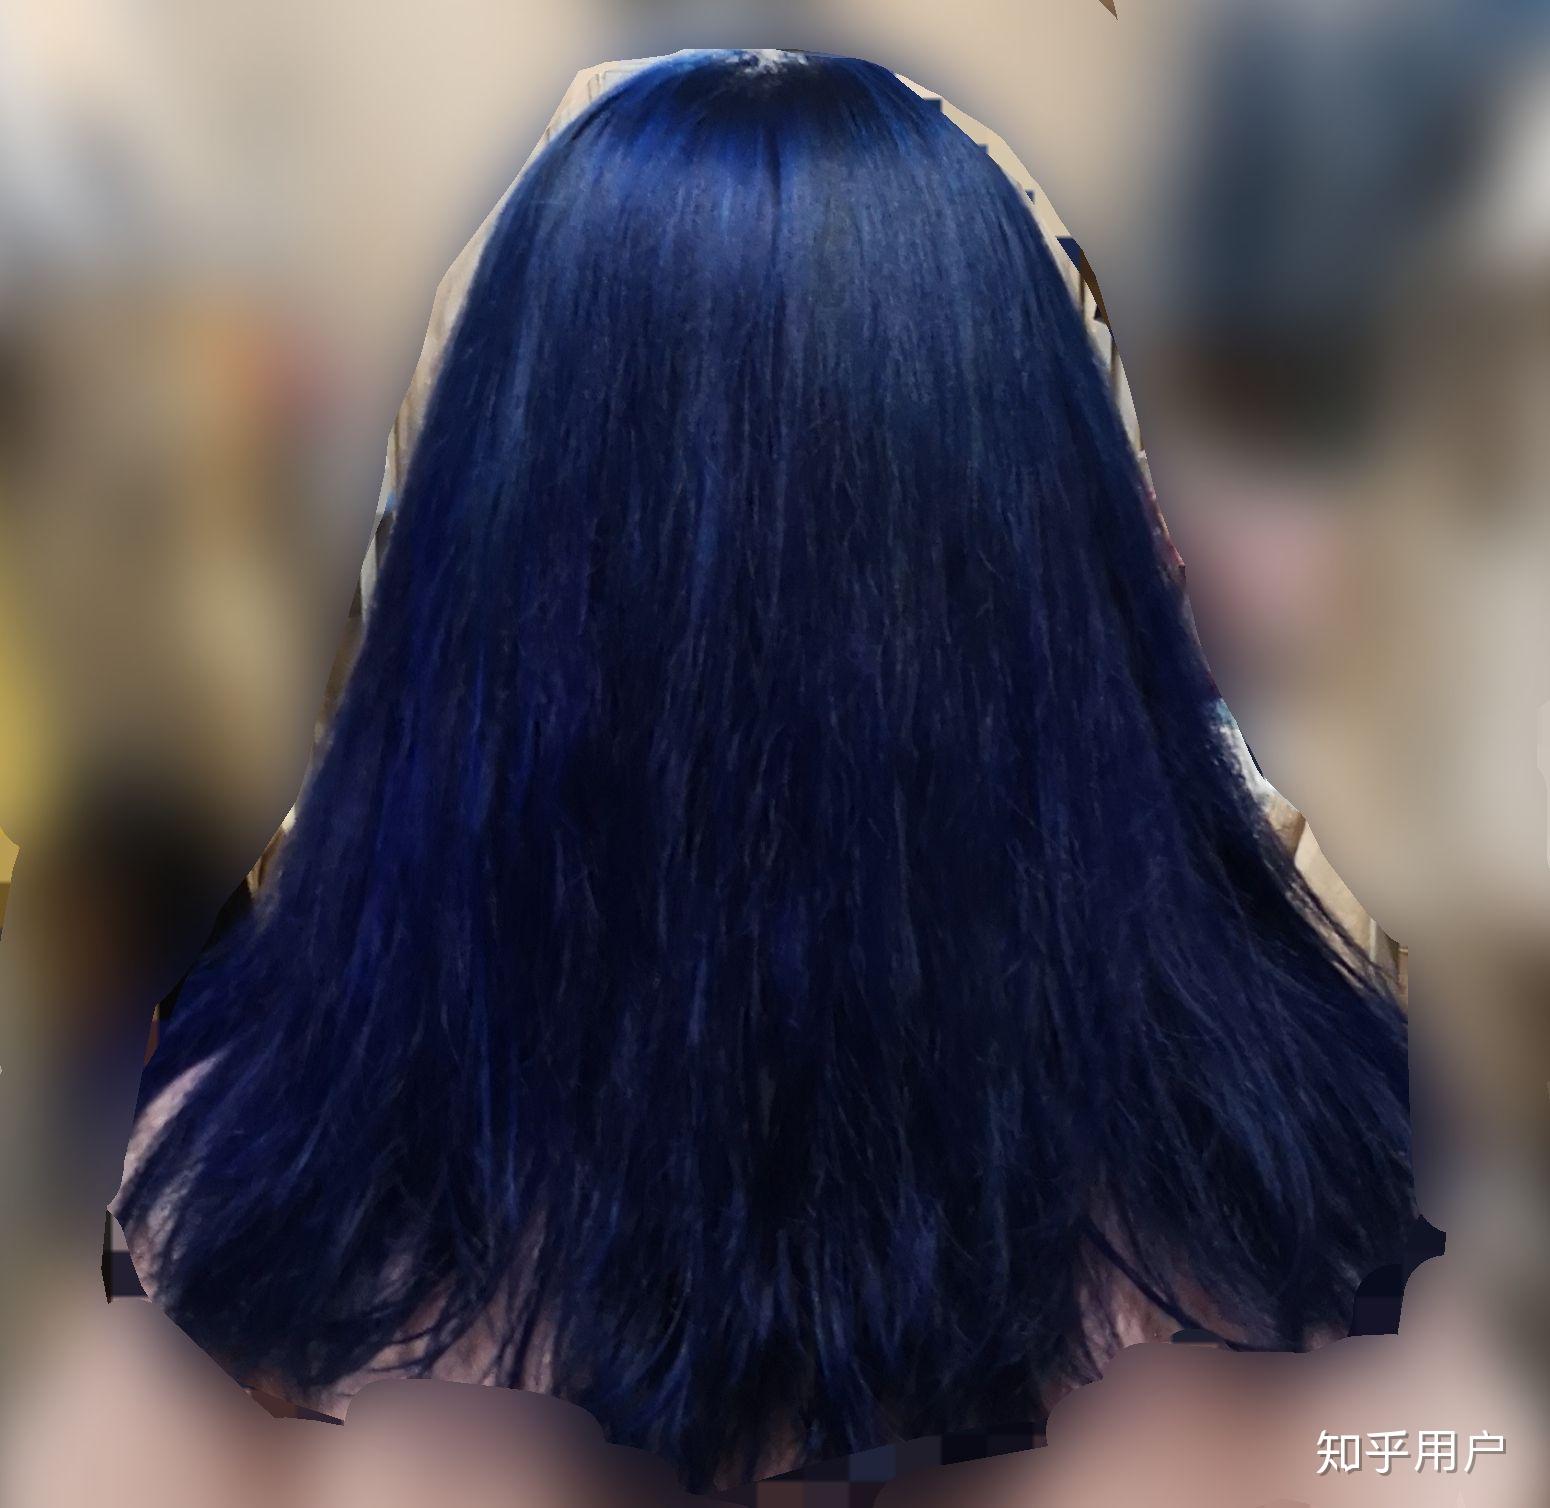 想把头发染成蓝色,一般多久褪色?会褪成哪些颜色? 